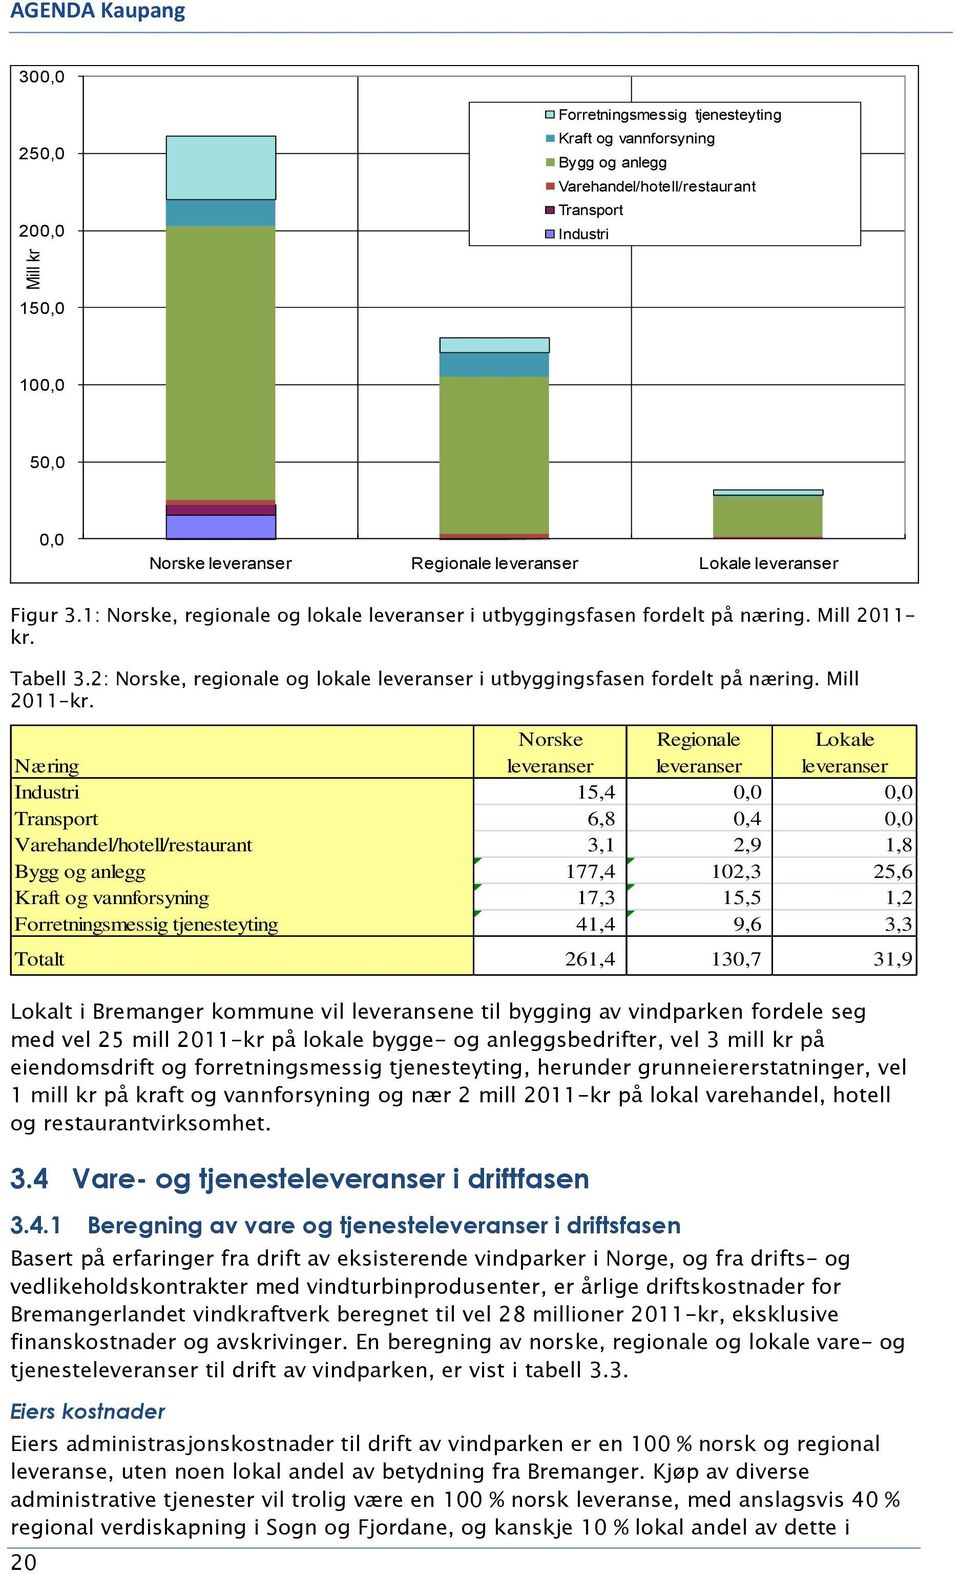 2: Norske, regionale og lokale leveranser i utbyggingsfasen fordelt på næring. Mill 2011-kr.